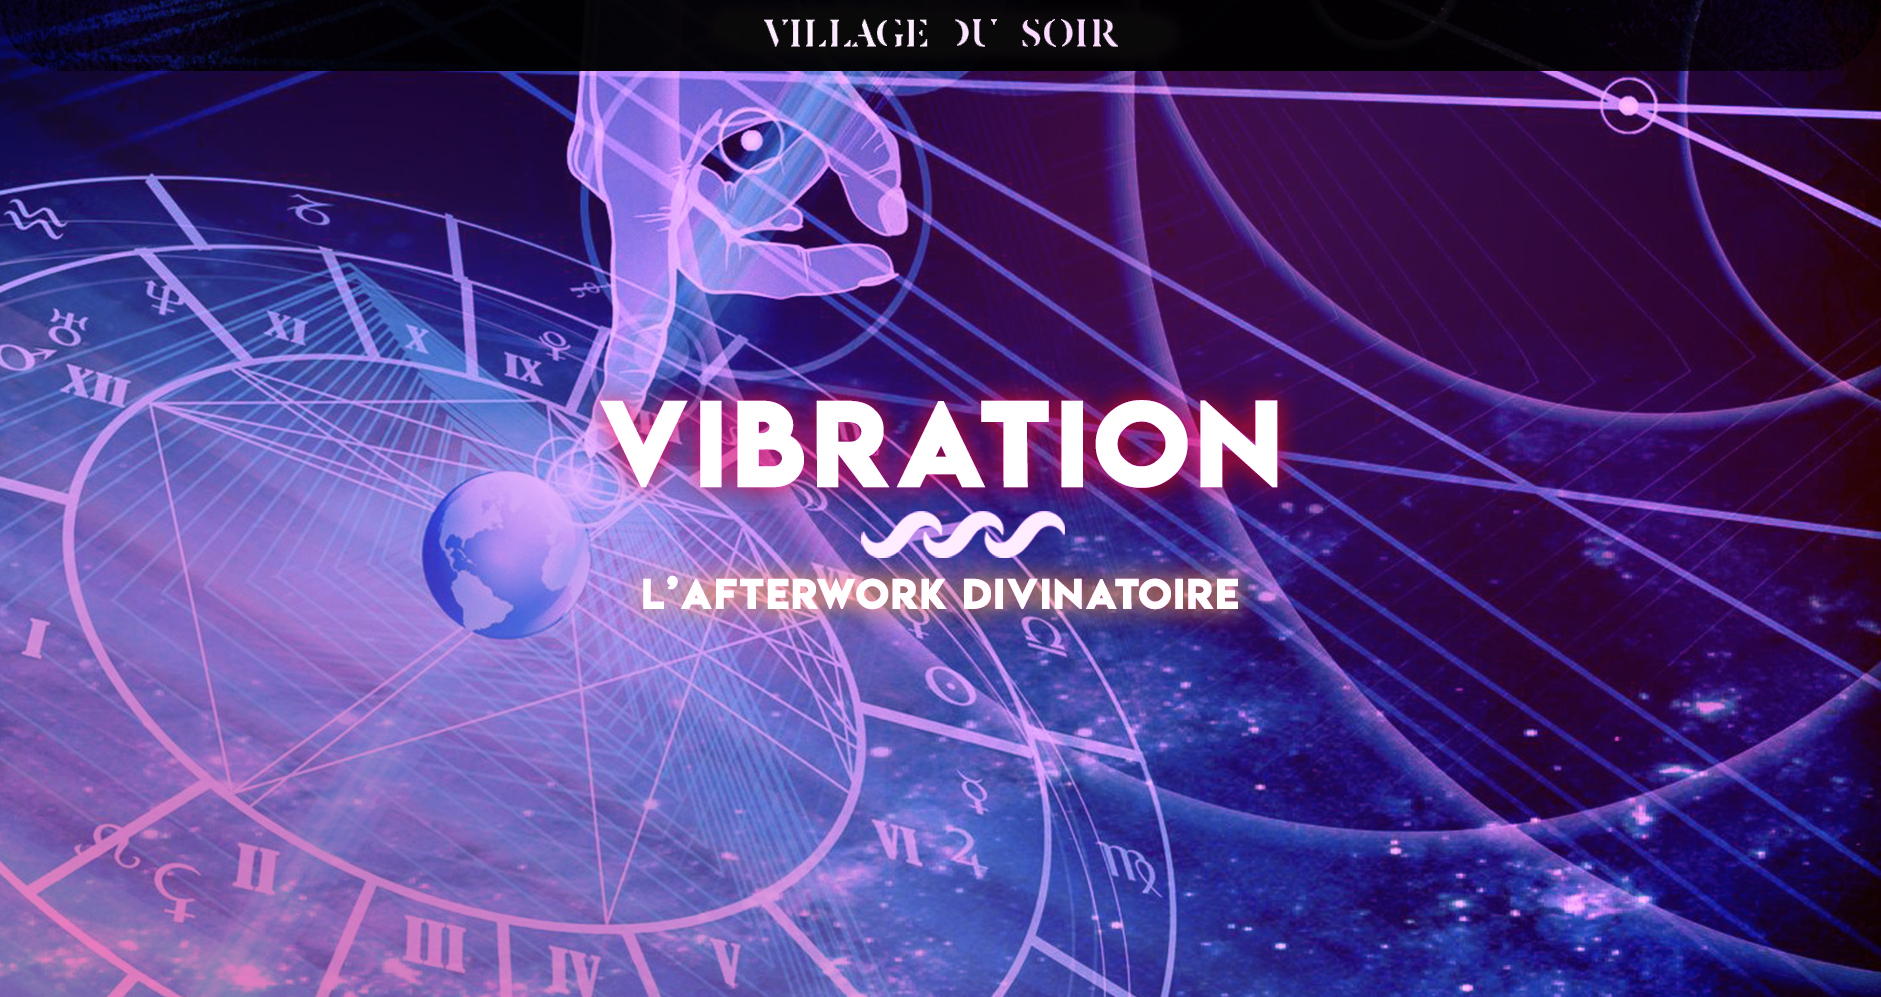 Vibration - L'Afterwork divinatoire